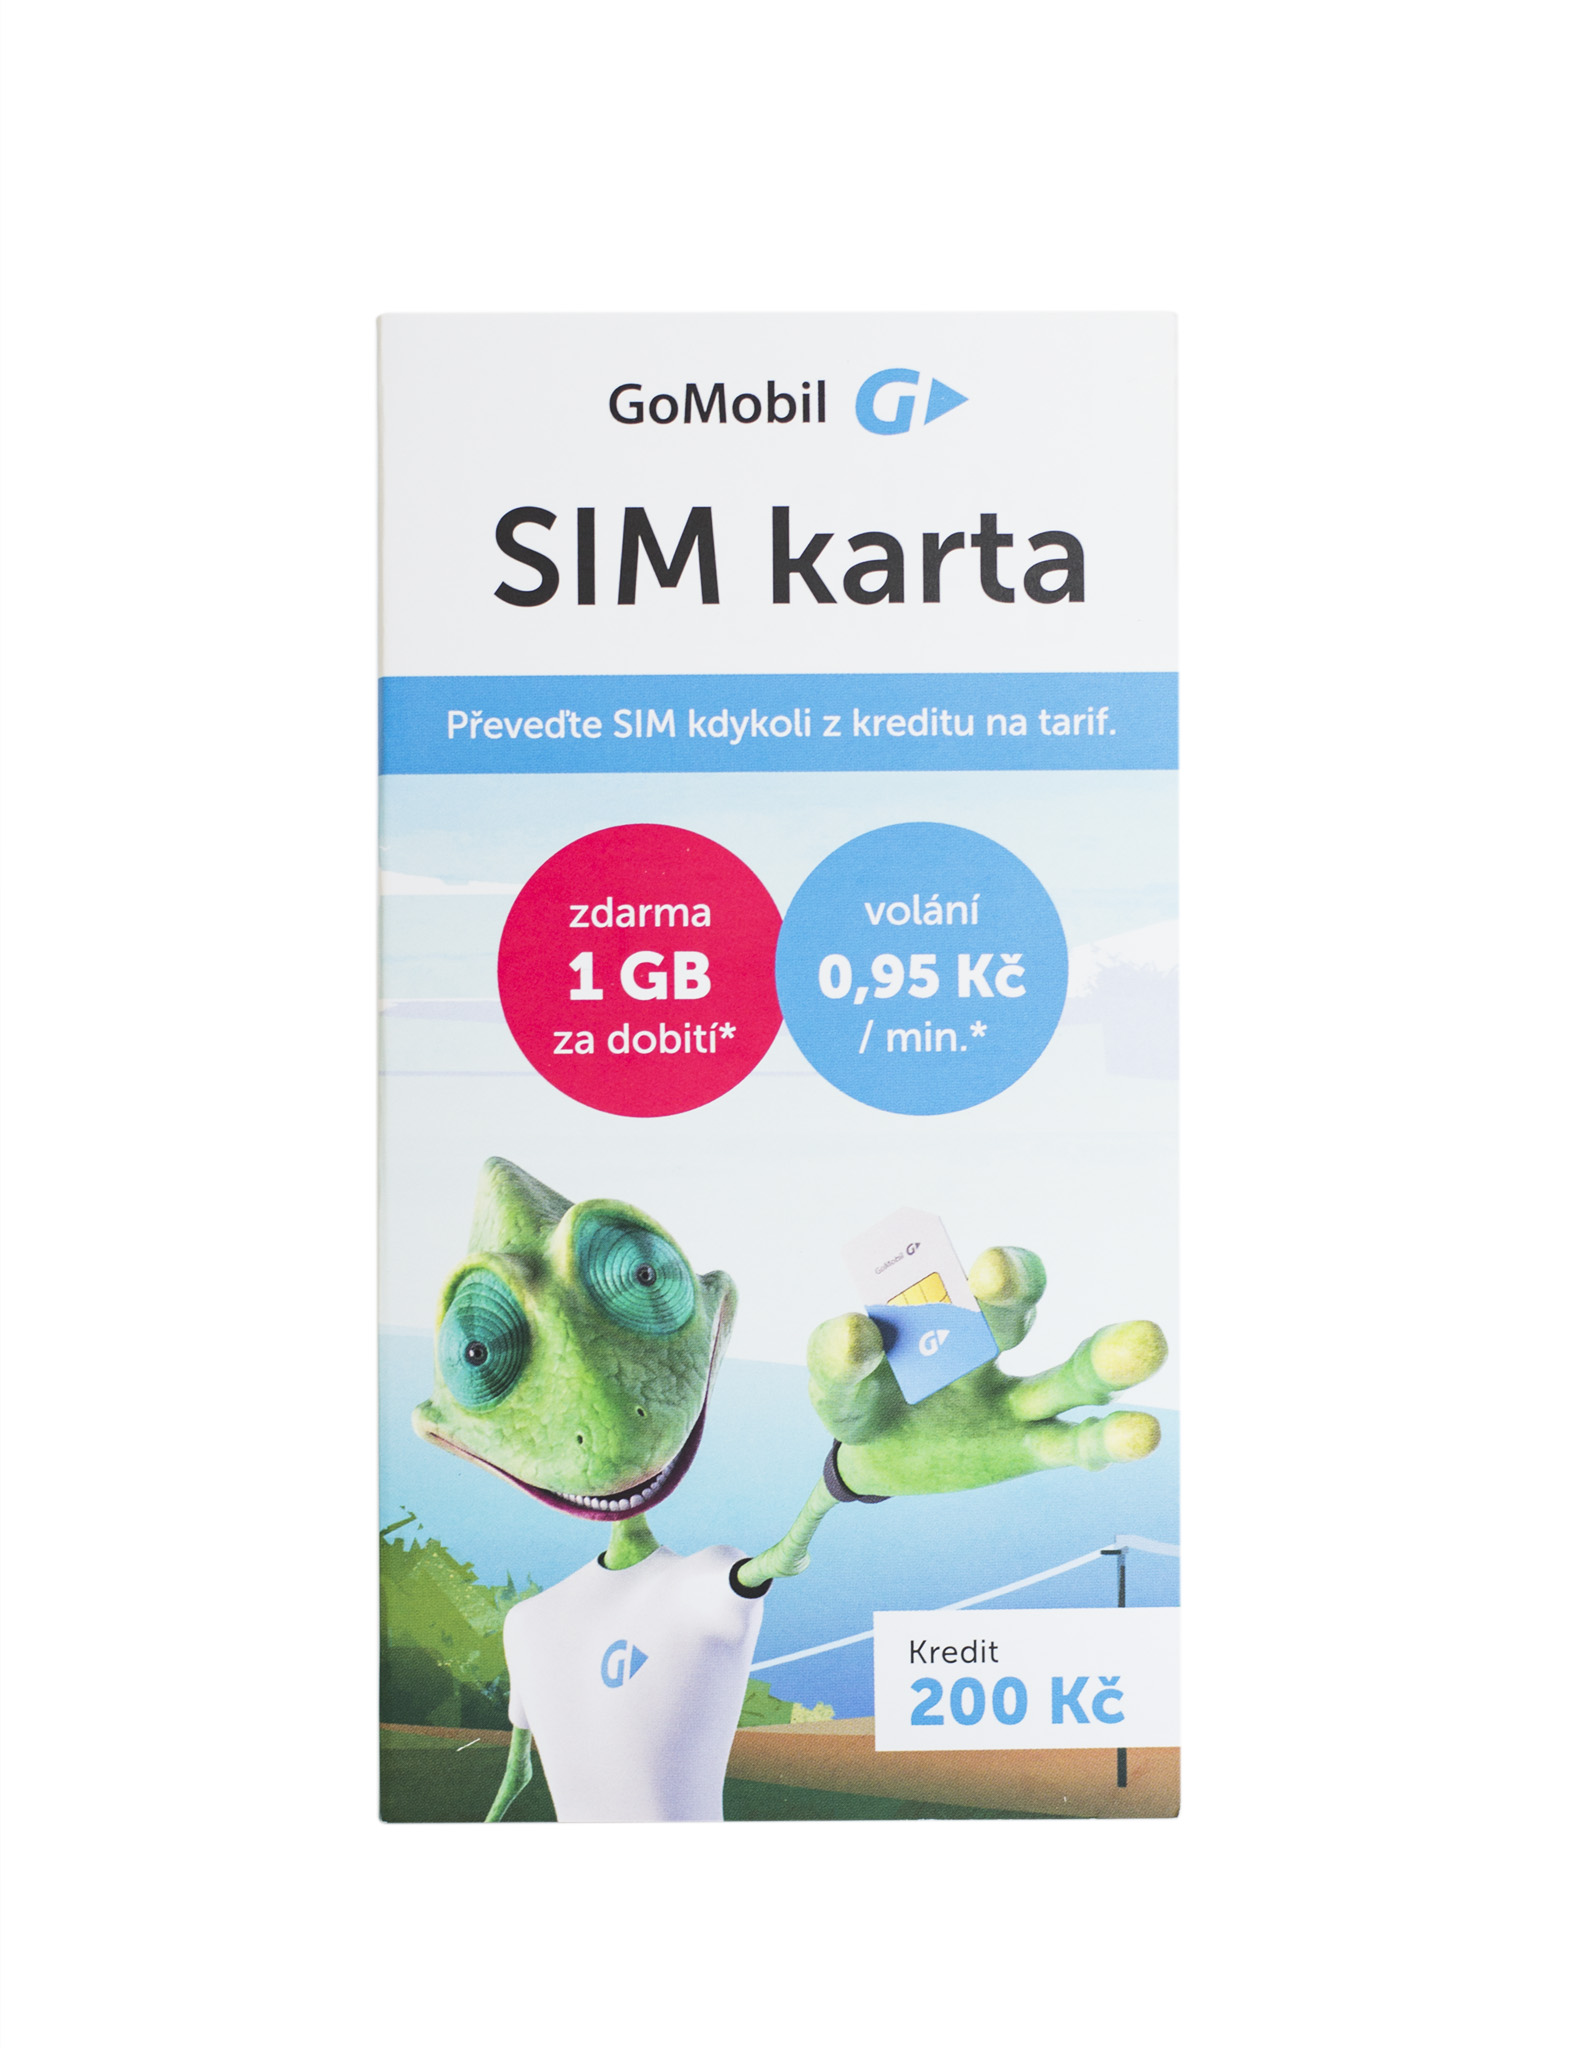 Predplatená GoMobil SIM karta - kredit 200,- Kč